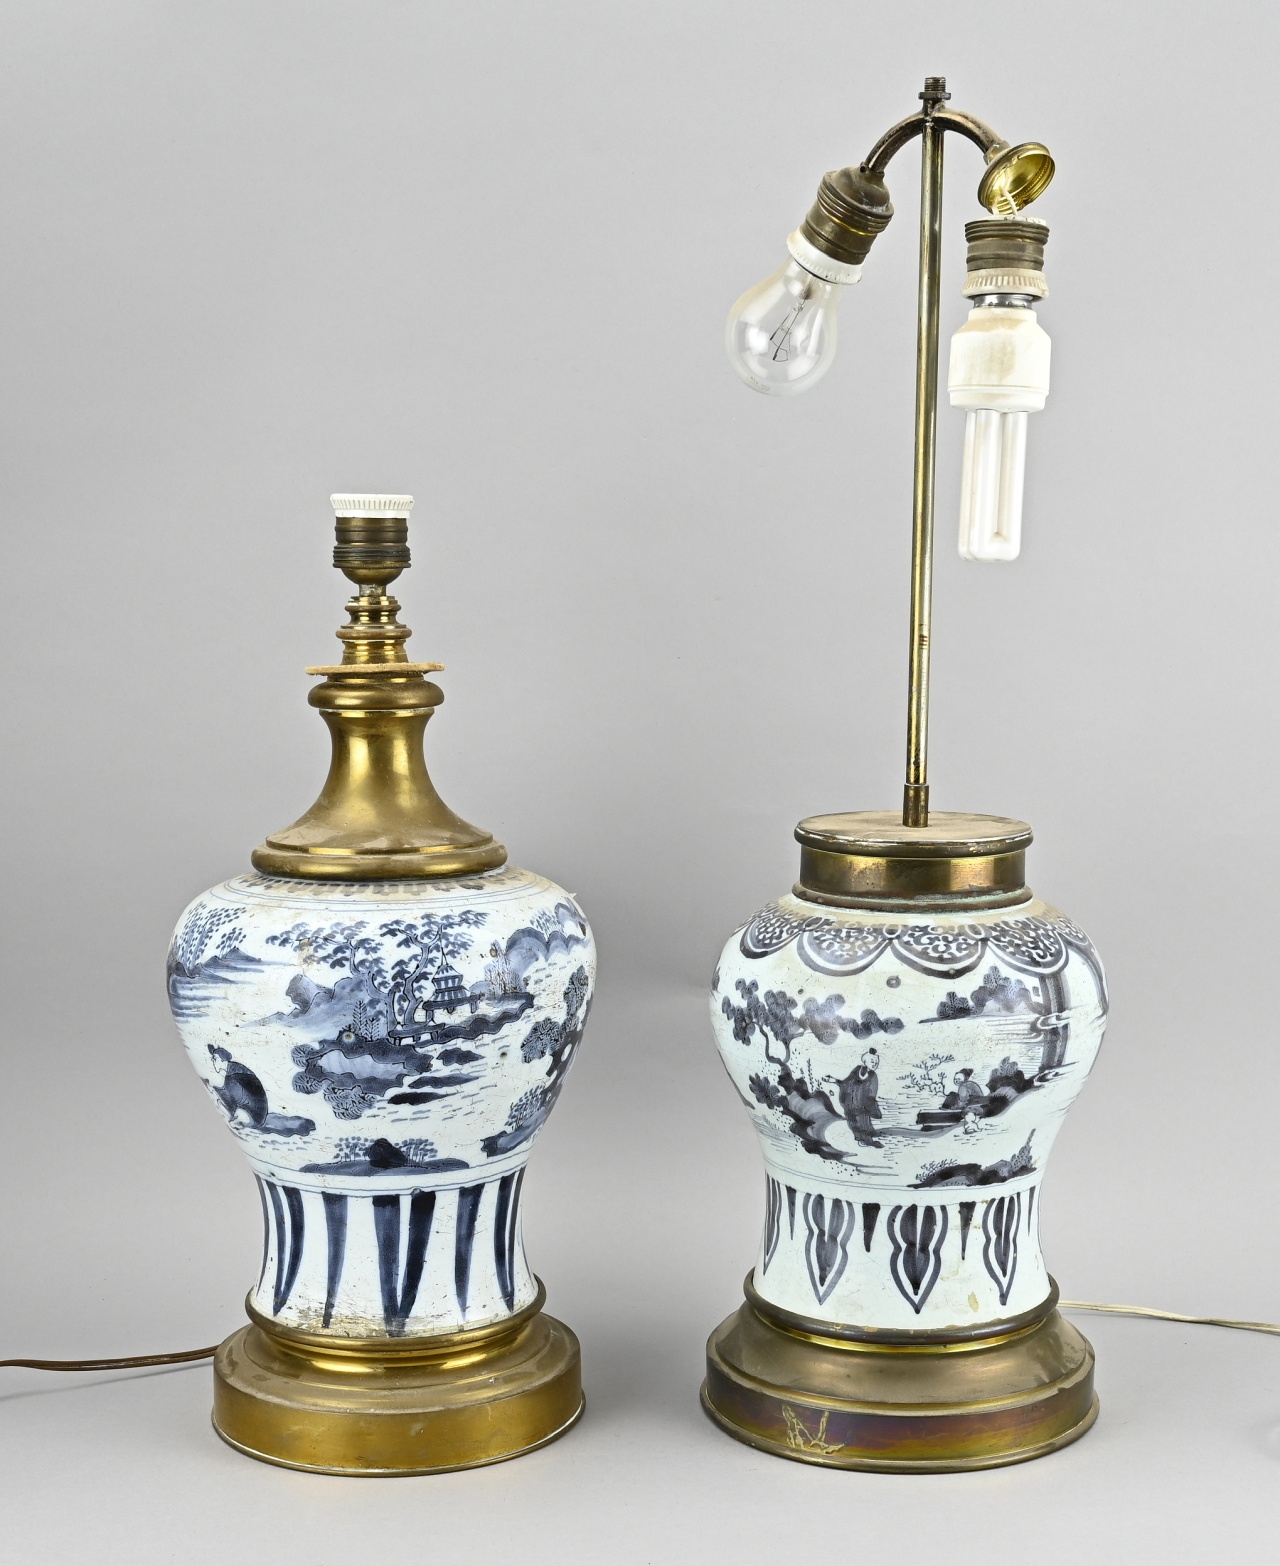 2x Delft vase lamp, H 44 - 60 cm.